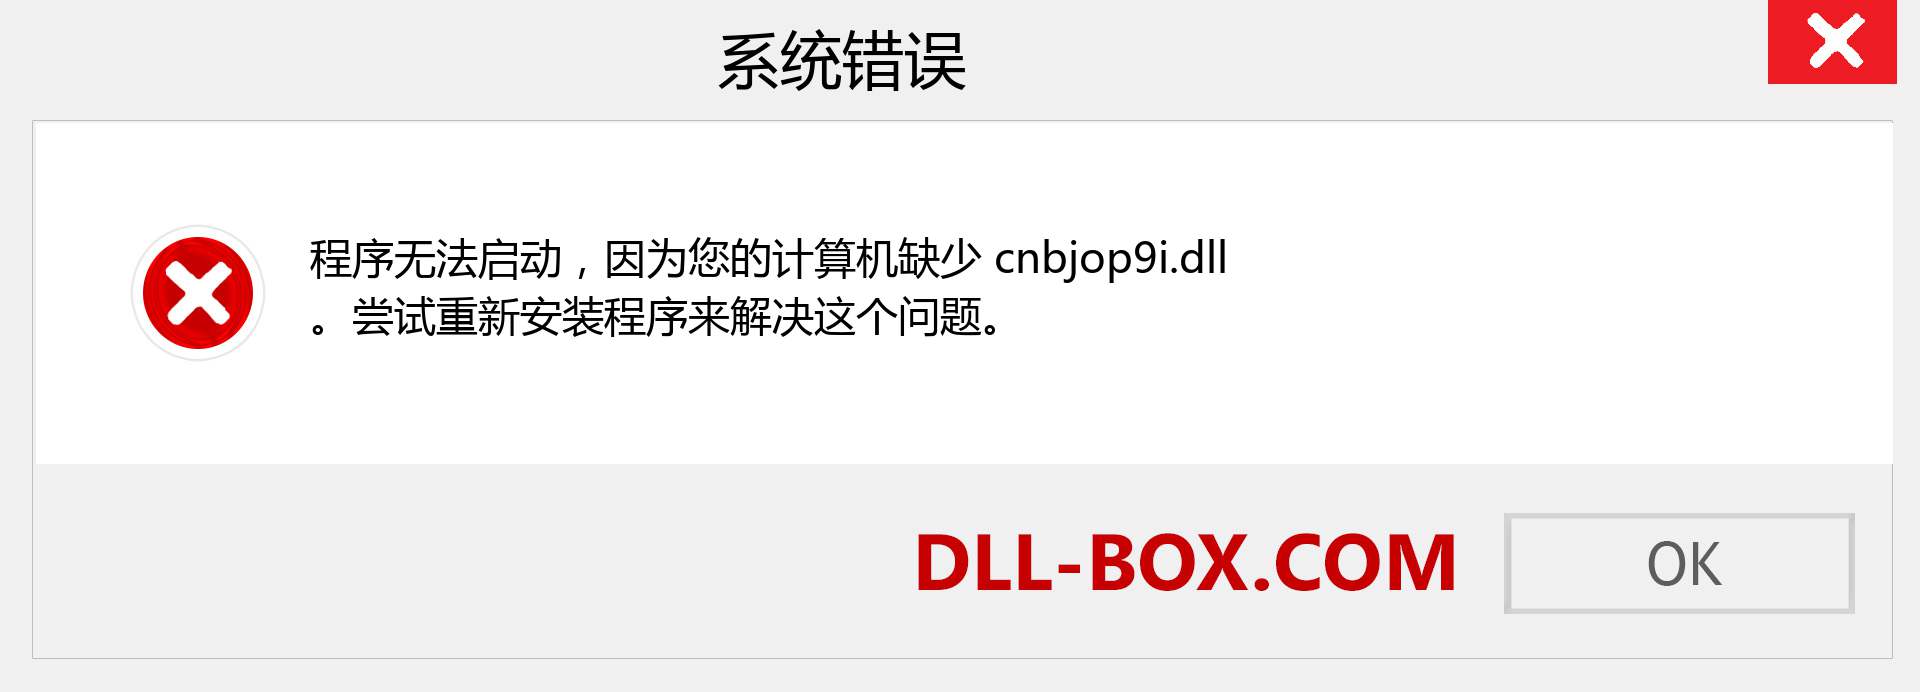 cnbjop9i.dll 文件丢失？。 适用于 Windows 7、8、10 的下载 - 修复 Windows、照片、图像上的 cnbjop9i dll 丢失错误